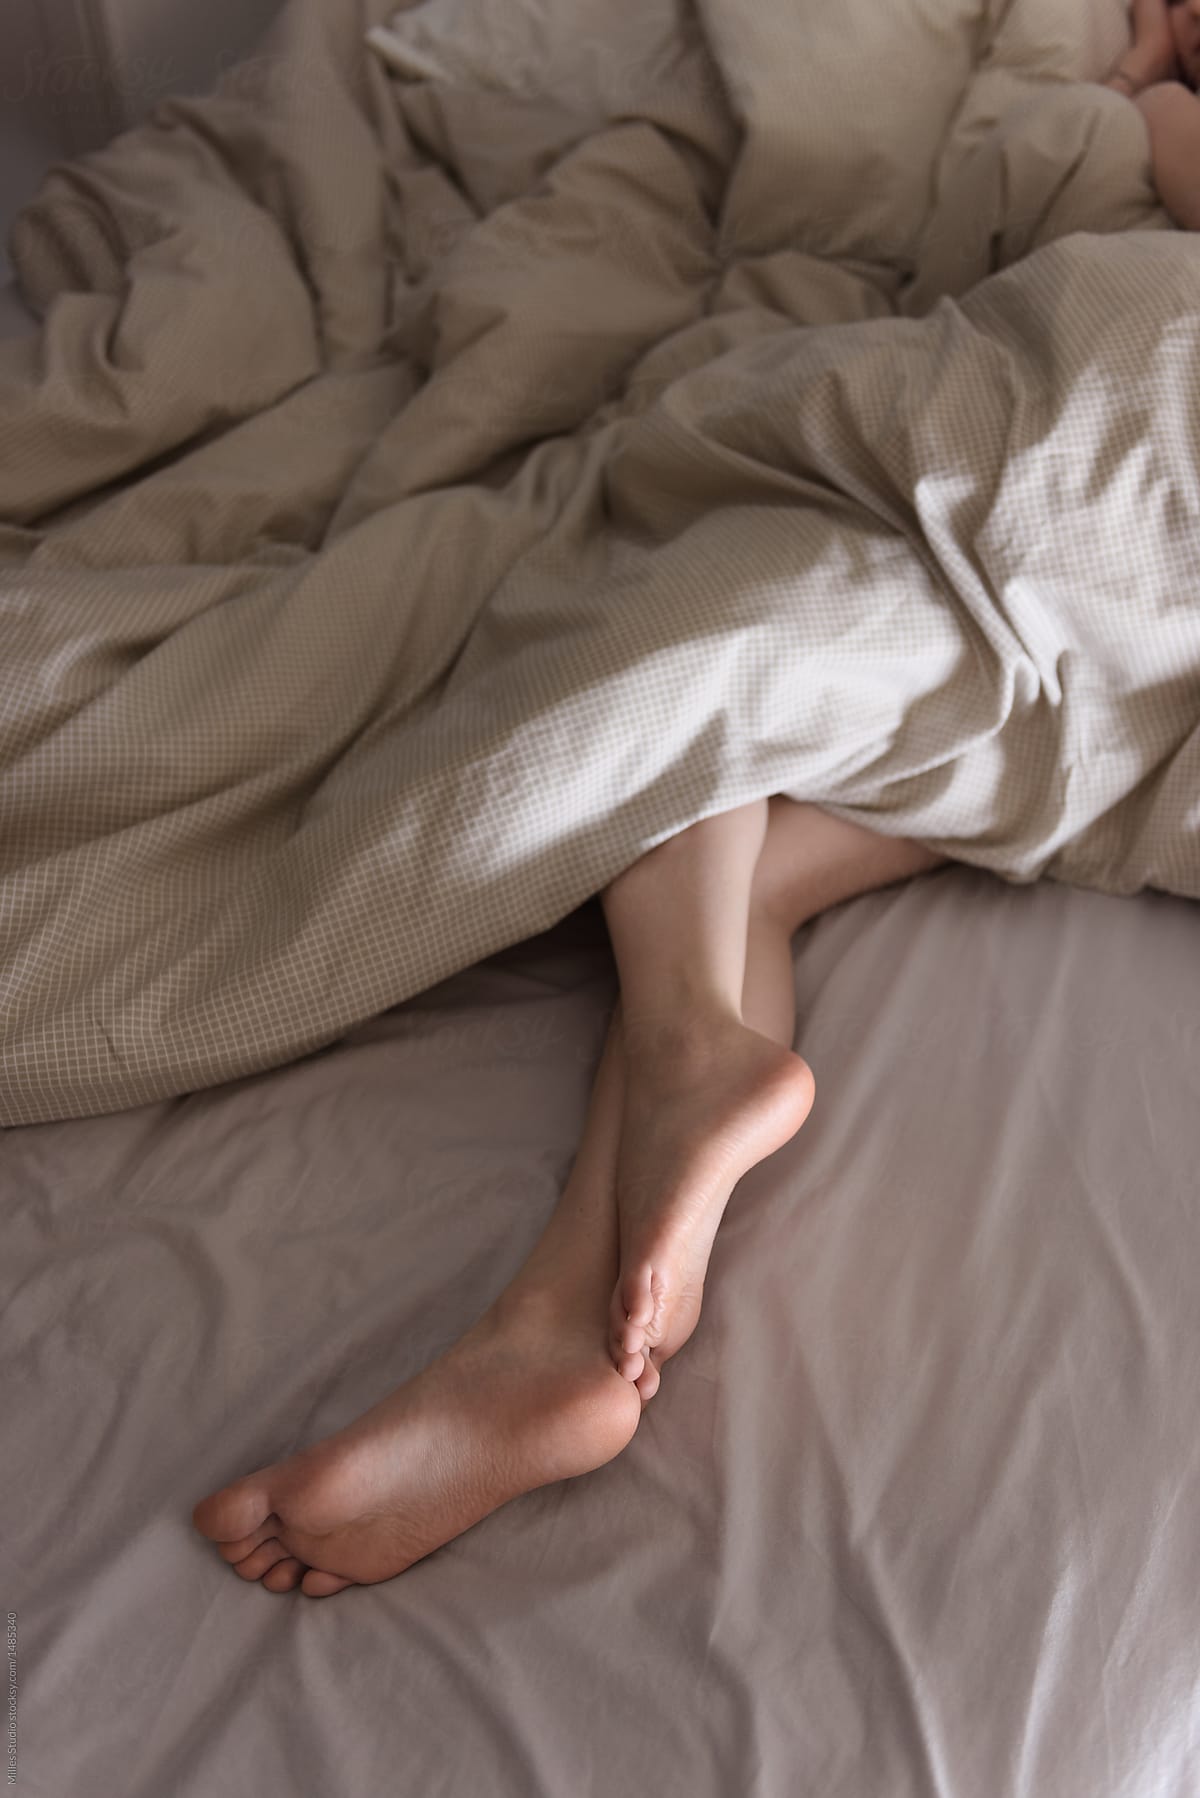 Tidur Lebih Cepat dengan Melakukan 5 Tips Berikut Ini